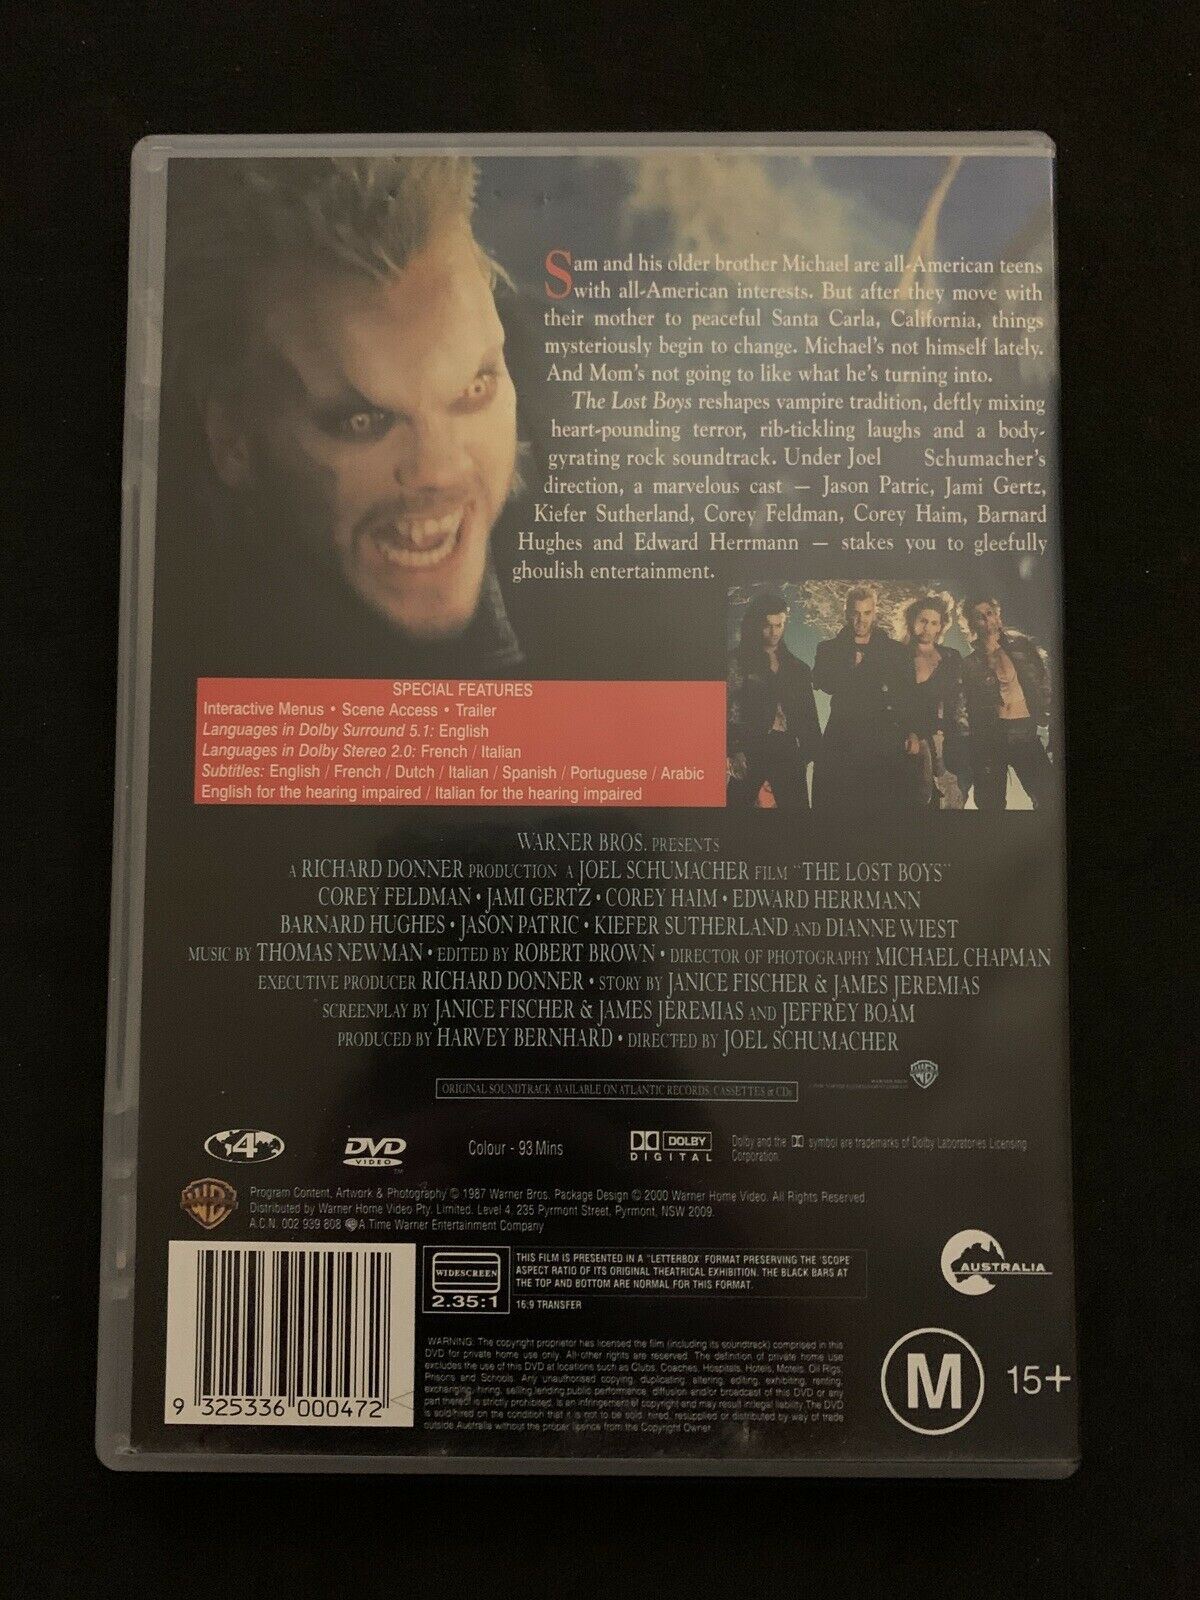 The Lost Boys (DVD, 1987) Jason Patric, Corey Haim, Kiefer Sutherland - Region 4